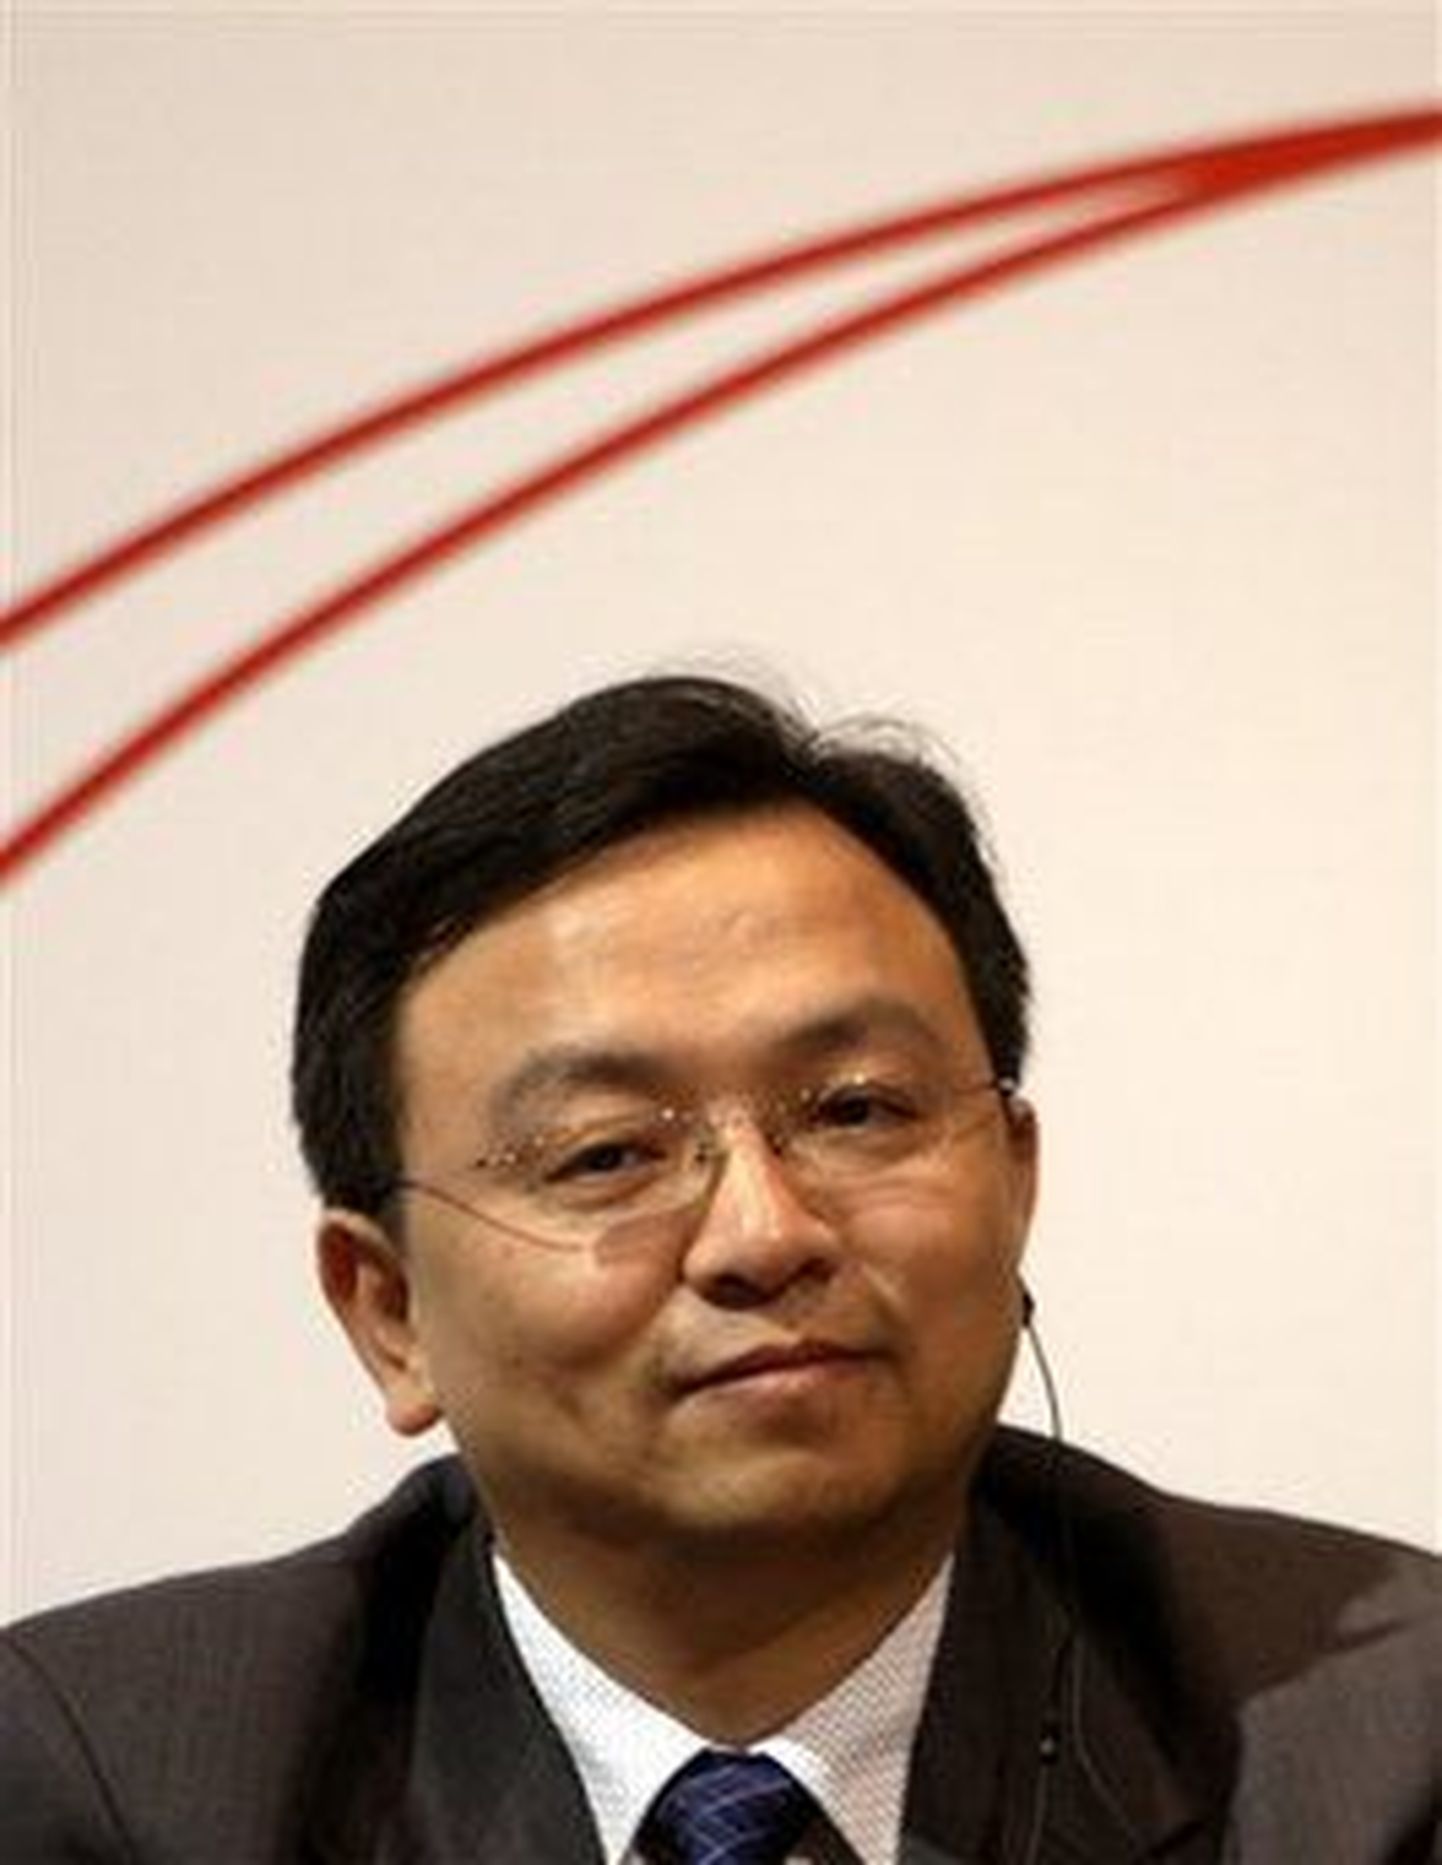 Hiina rikkaim inimene, autotootja BYD asutaja Wang Chuanfu, kelle varandust hinnatakse 5,1 miljardile dollarile.